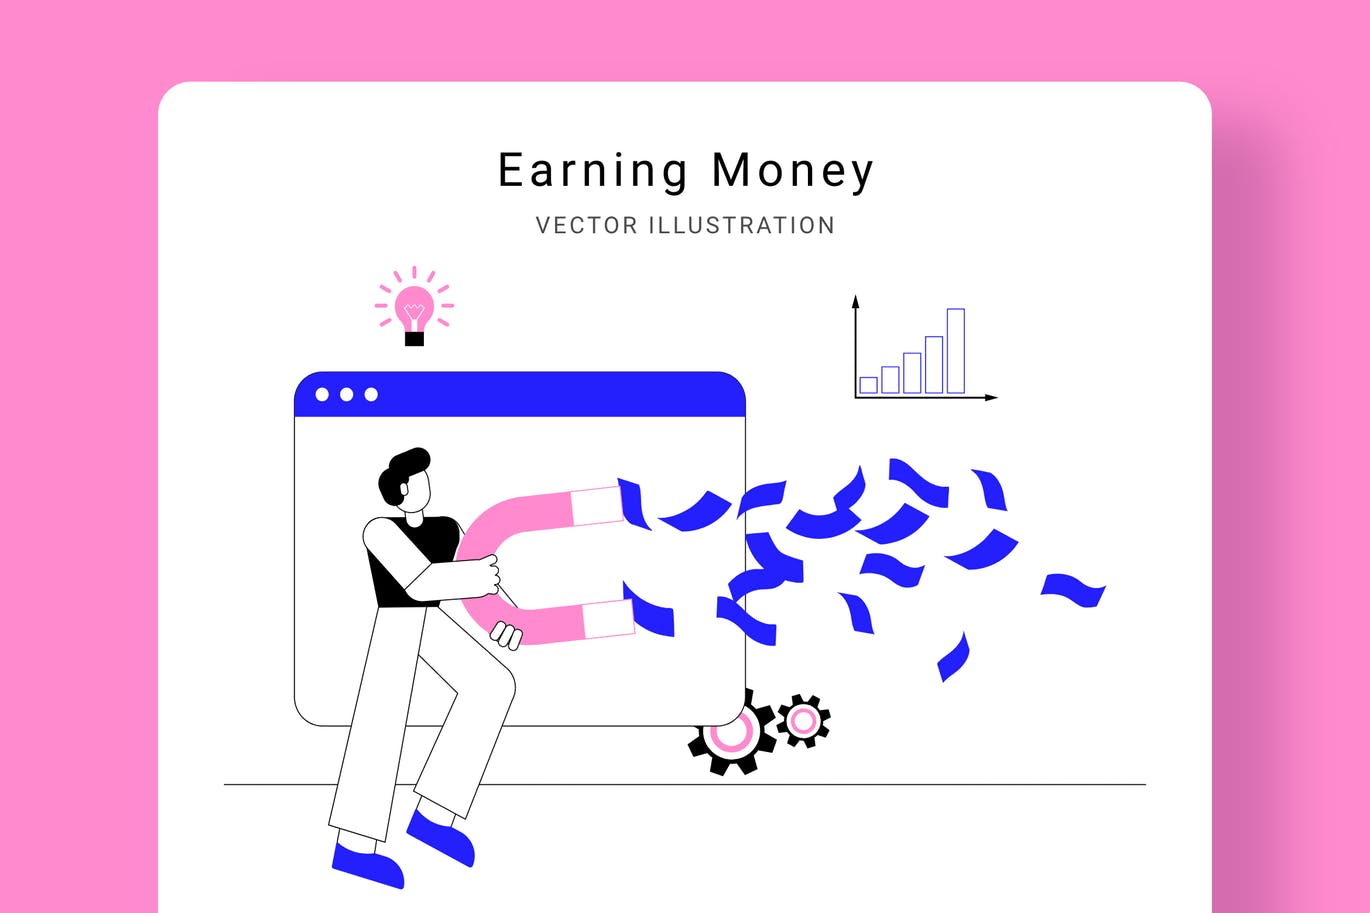 吸金磁石矢量蚂蚁素材精选概念插画设计素材 Earning Money Vector Illustration Scene插图